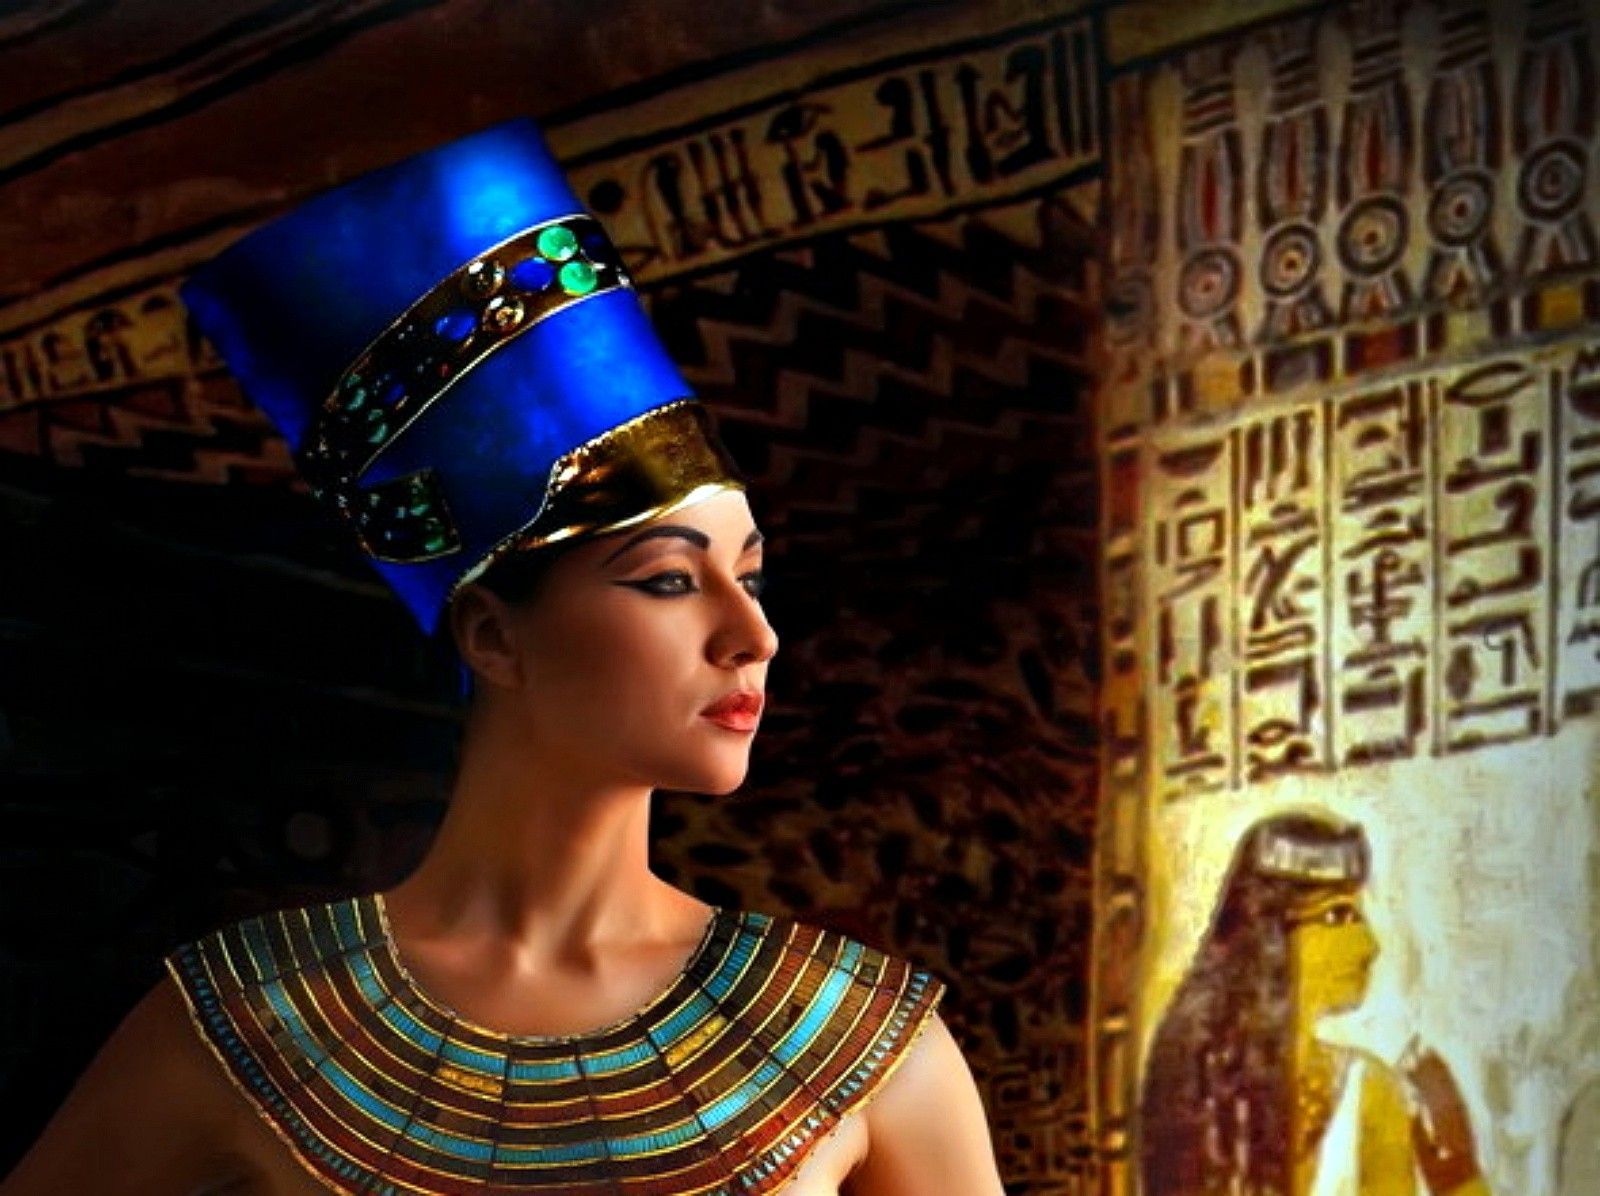 Cloepatra the queen of egyptian cock